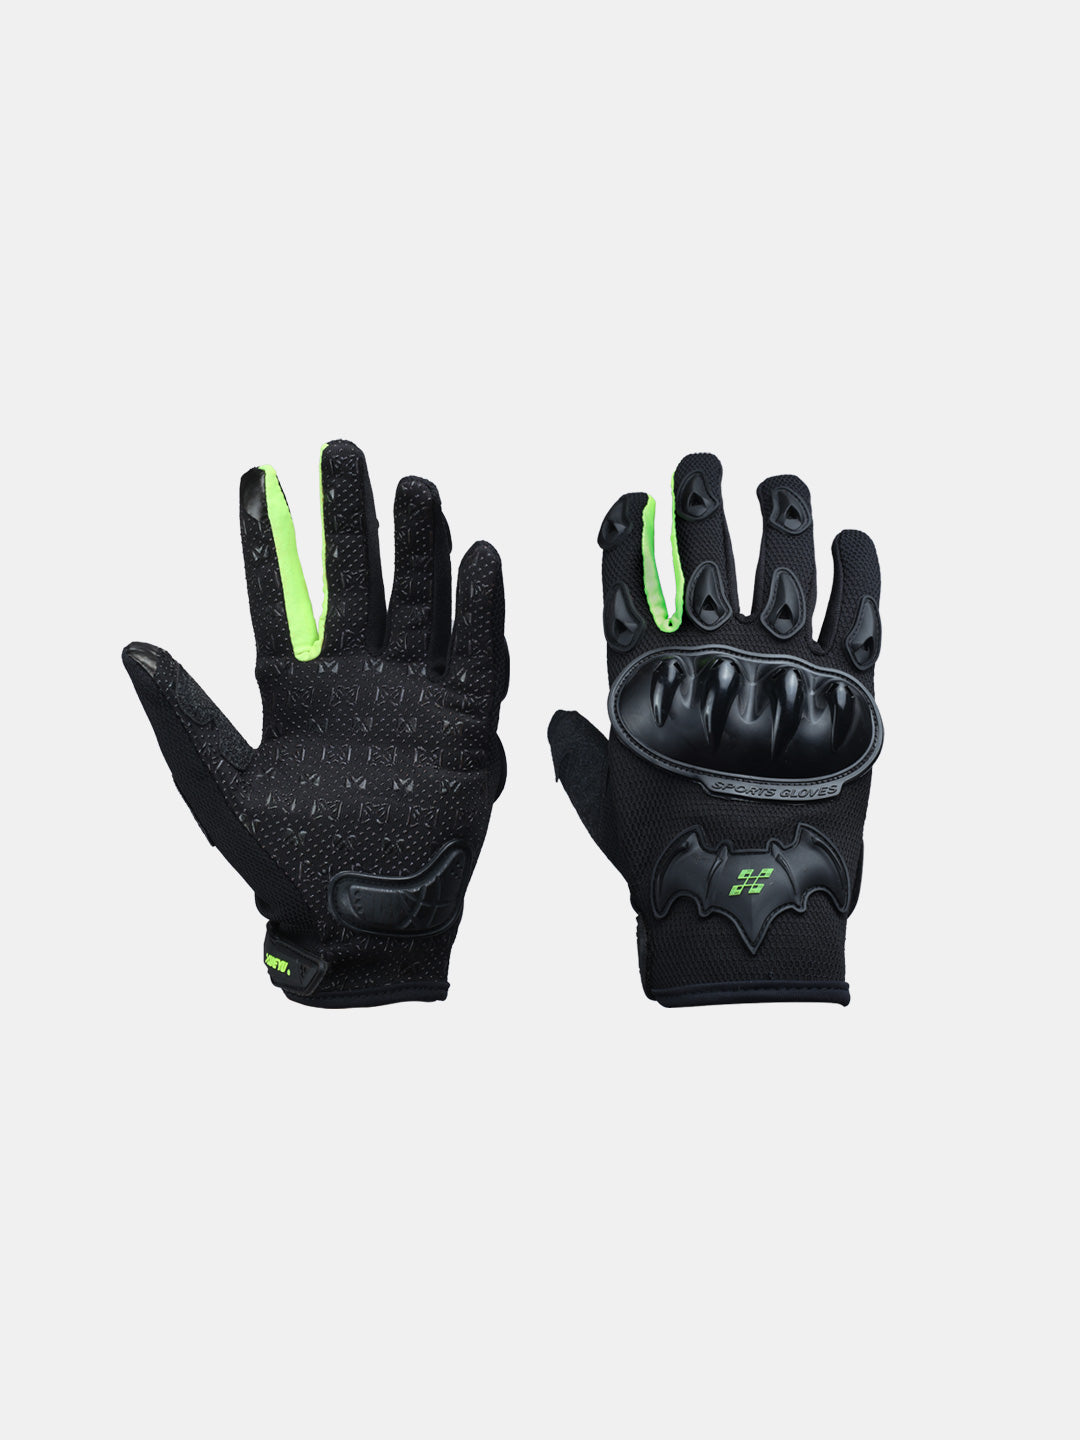 Masontex Gloves M33 Hi Viz Green